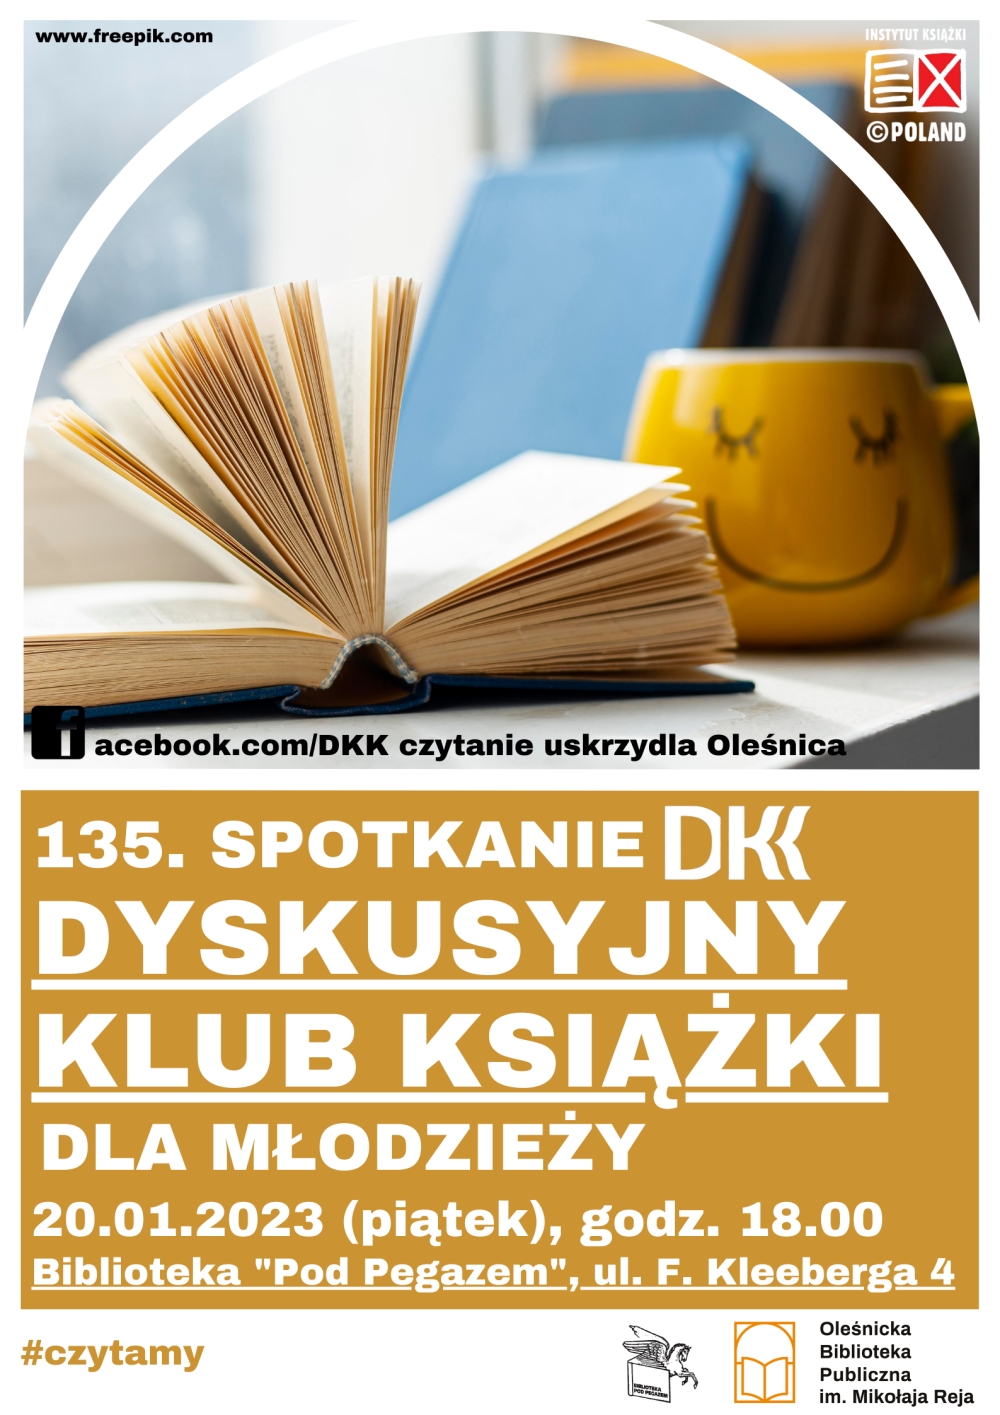 Plakat promujący 135 spotkanie w ramach DKK dla młodzieży